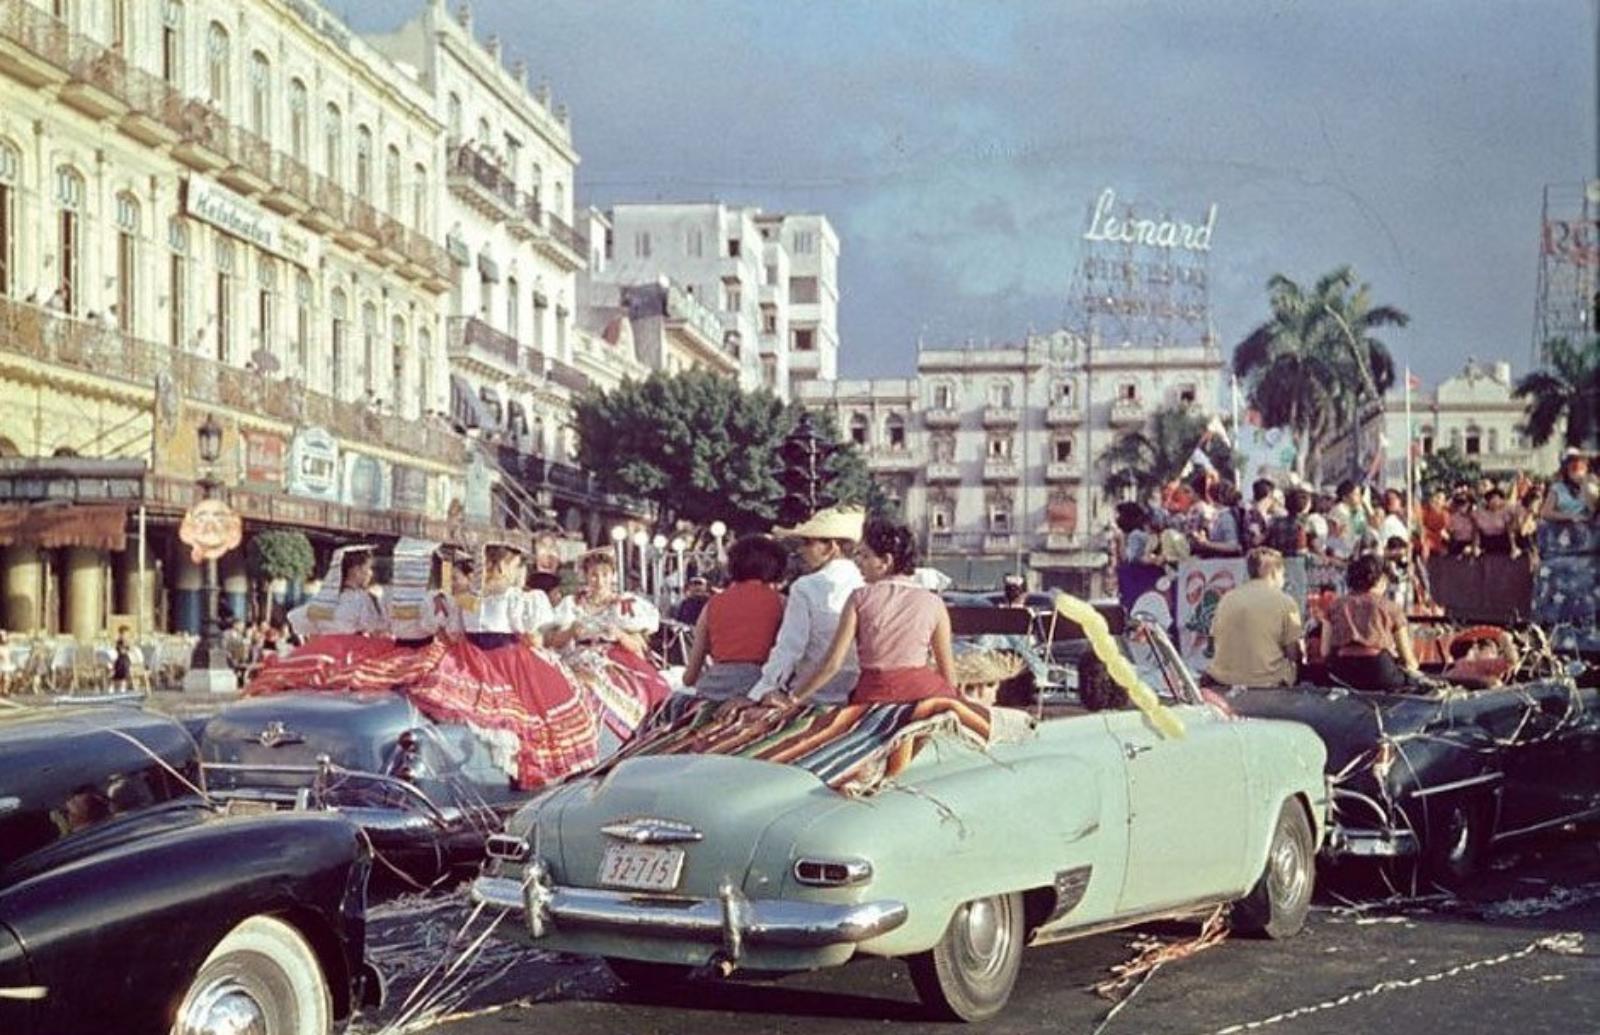 Гавана при Батисте считалась городом порочных развлечений. Фото 1954 года.